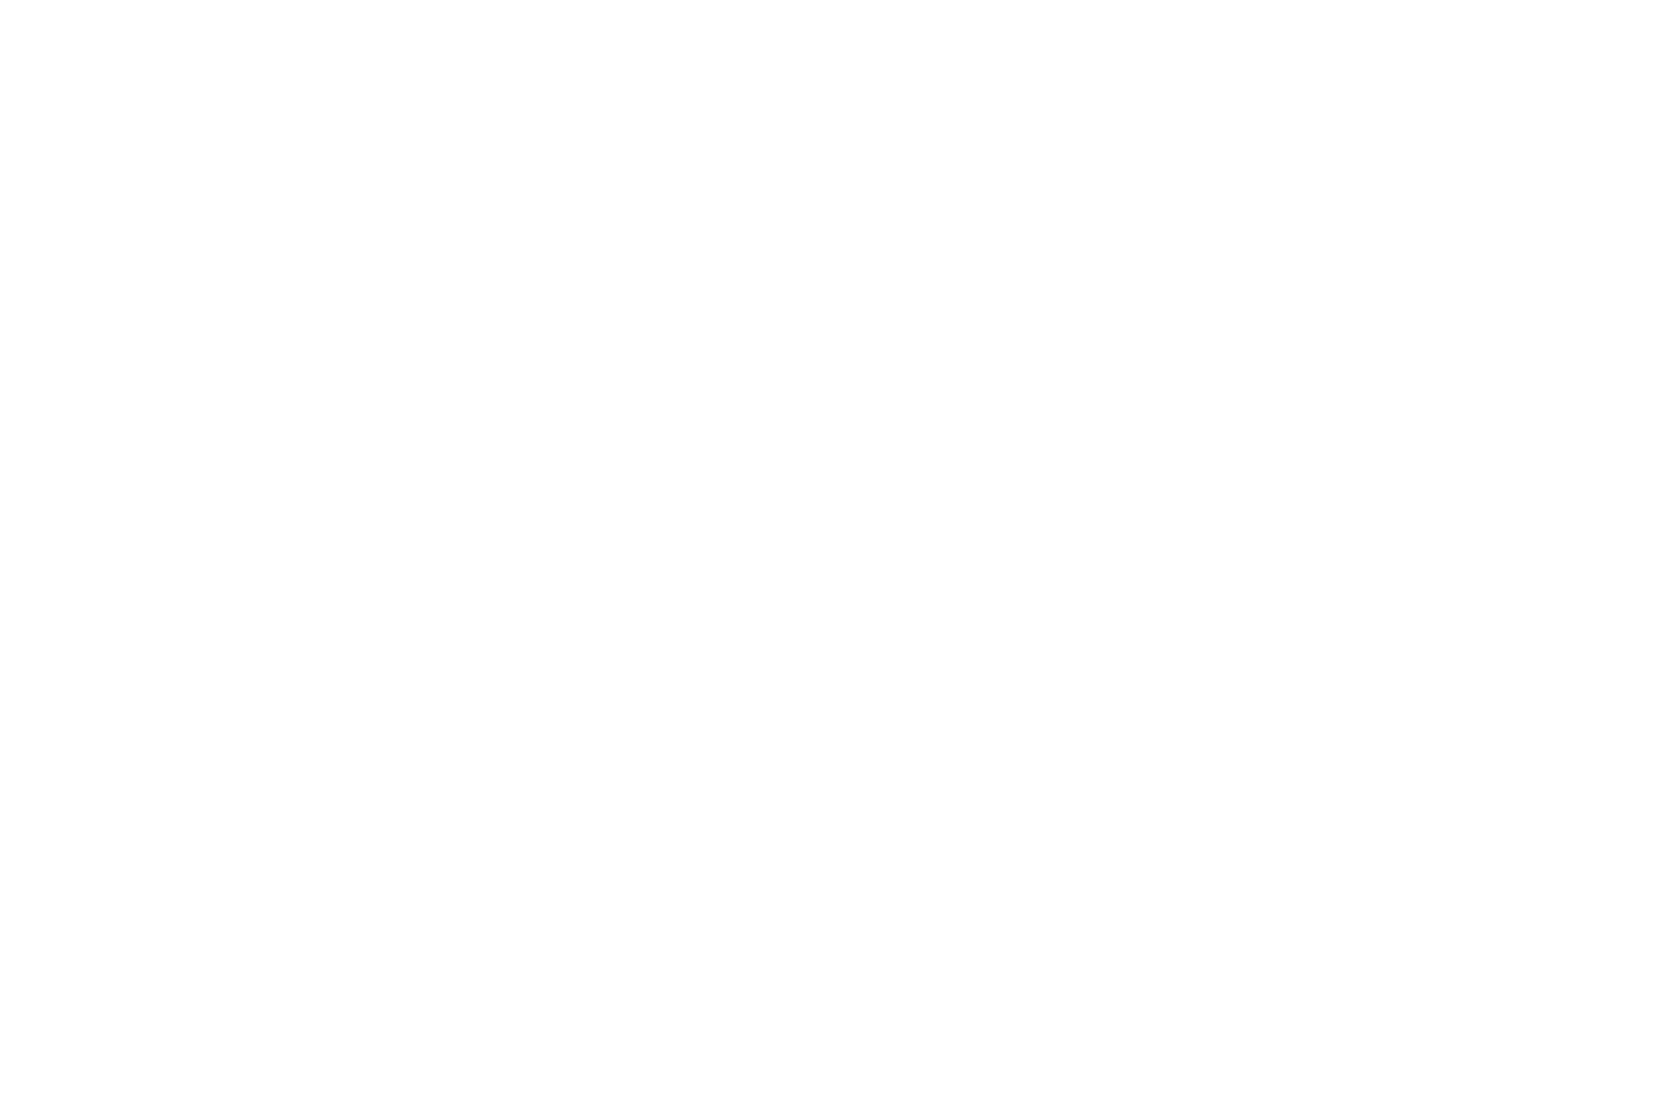 Схватка по классической борьбе между спортсменами Кривошеиным (Гомель) и Грачевым (Брест) на республиканских соревнованиях по классической борьбе и боксу в Бресте (БЕЛТА, 1951 г., из фондов БГАКФФД)